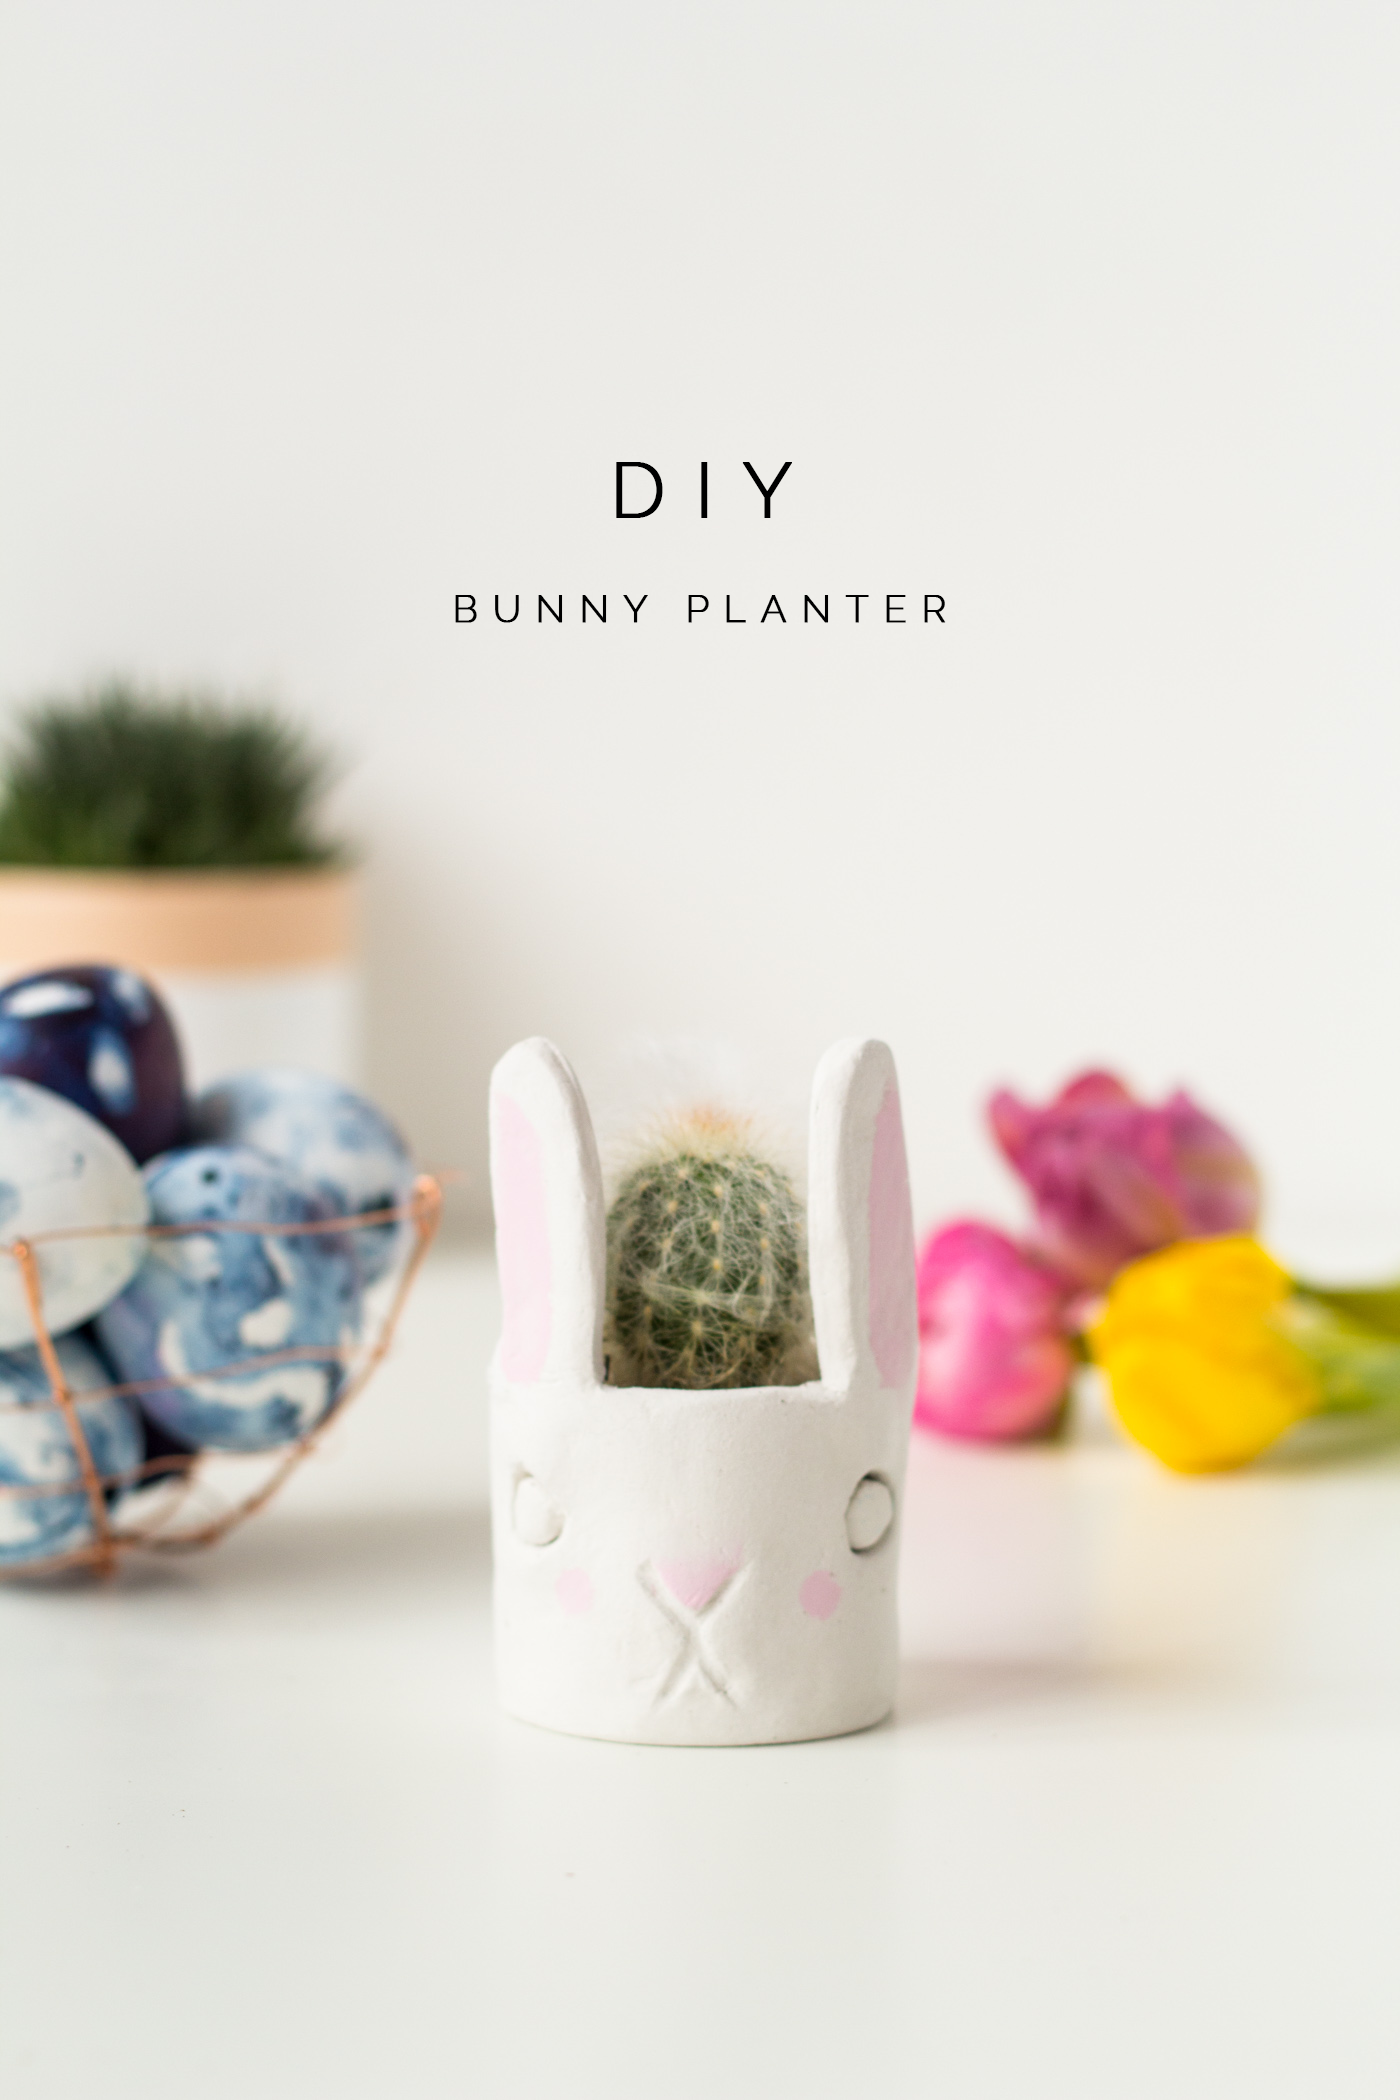 DIY Mini Cacti Bunny Planter tutorial | @fallfordiy